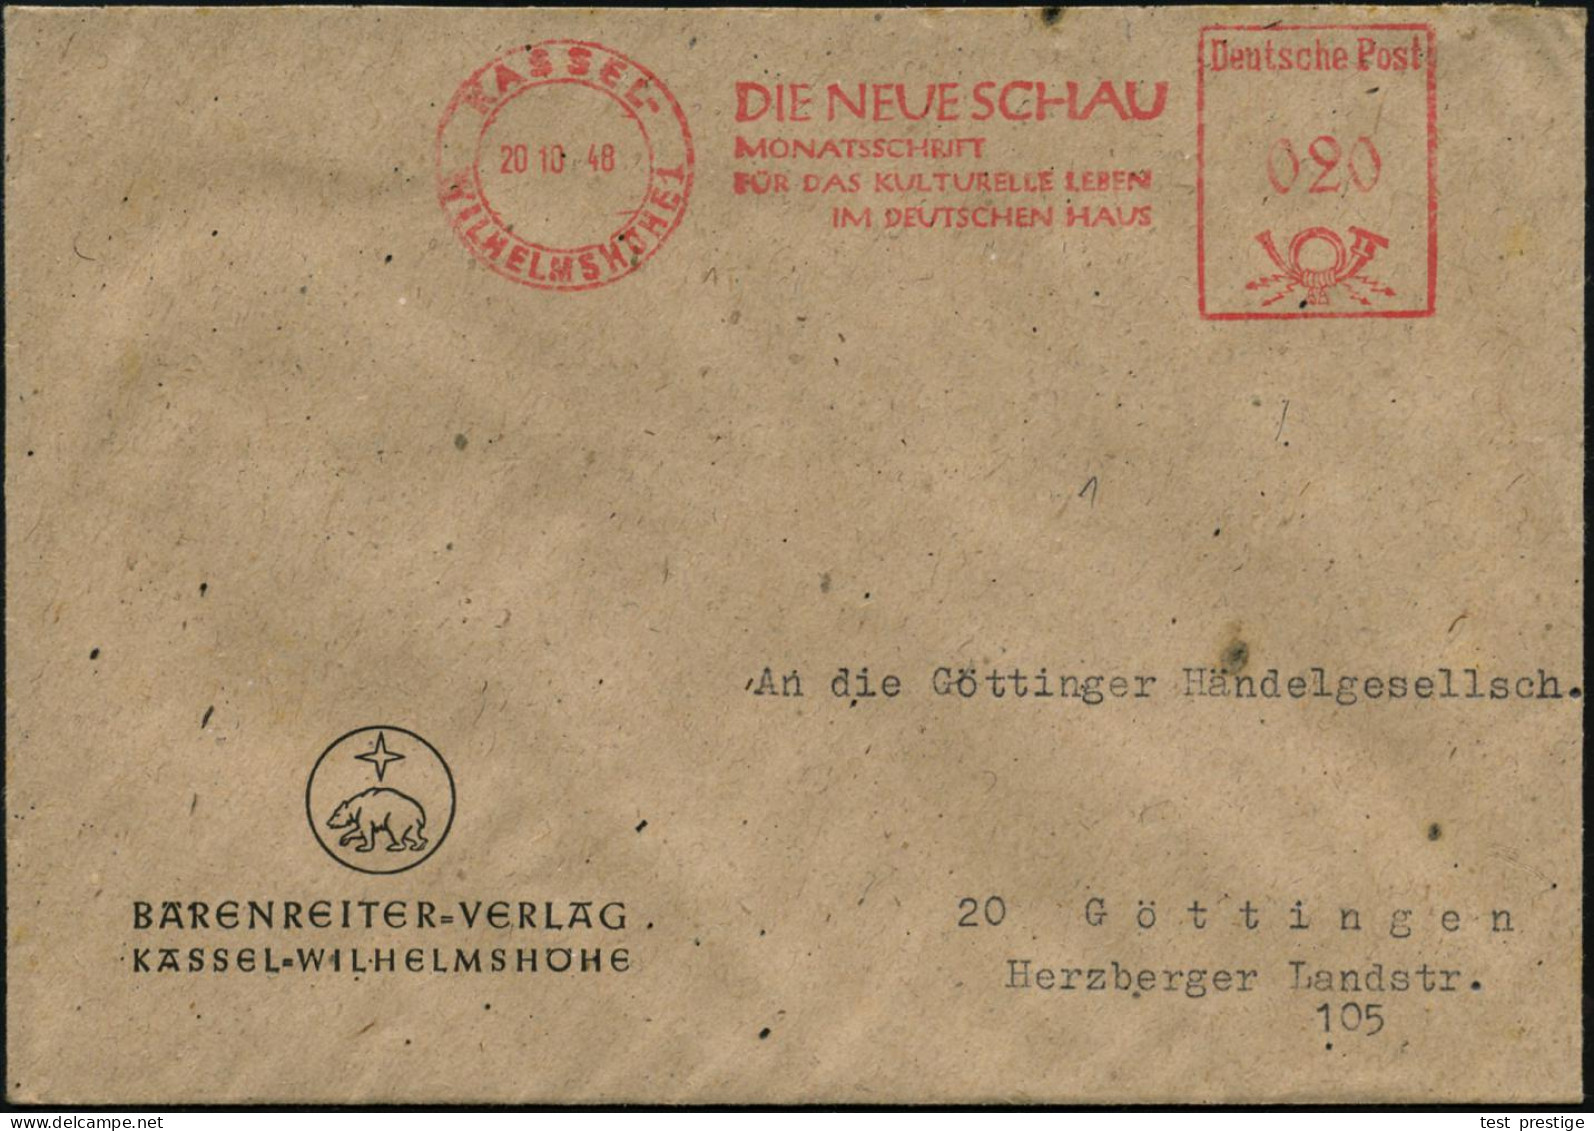 KASSEL-/ WILHELMSHÖHE 1/ DIE NEUE SCHAUMONATSZEITSCHRIFT... 1948 (20.10.) AFS Francotyp "Posthorn - Deutsche Post" Auf F - Música